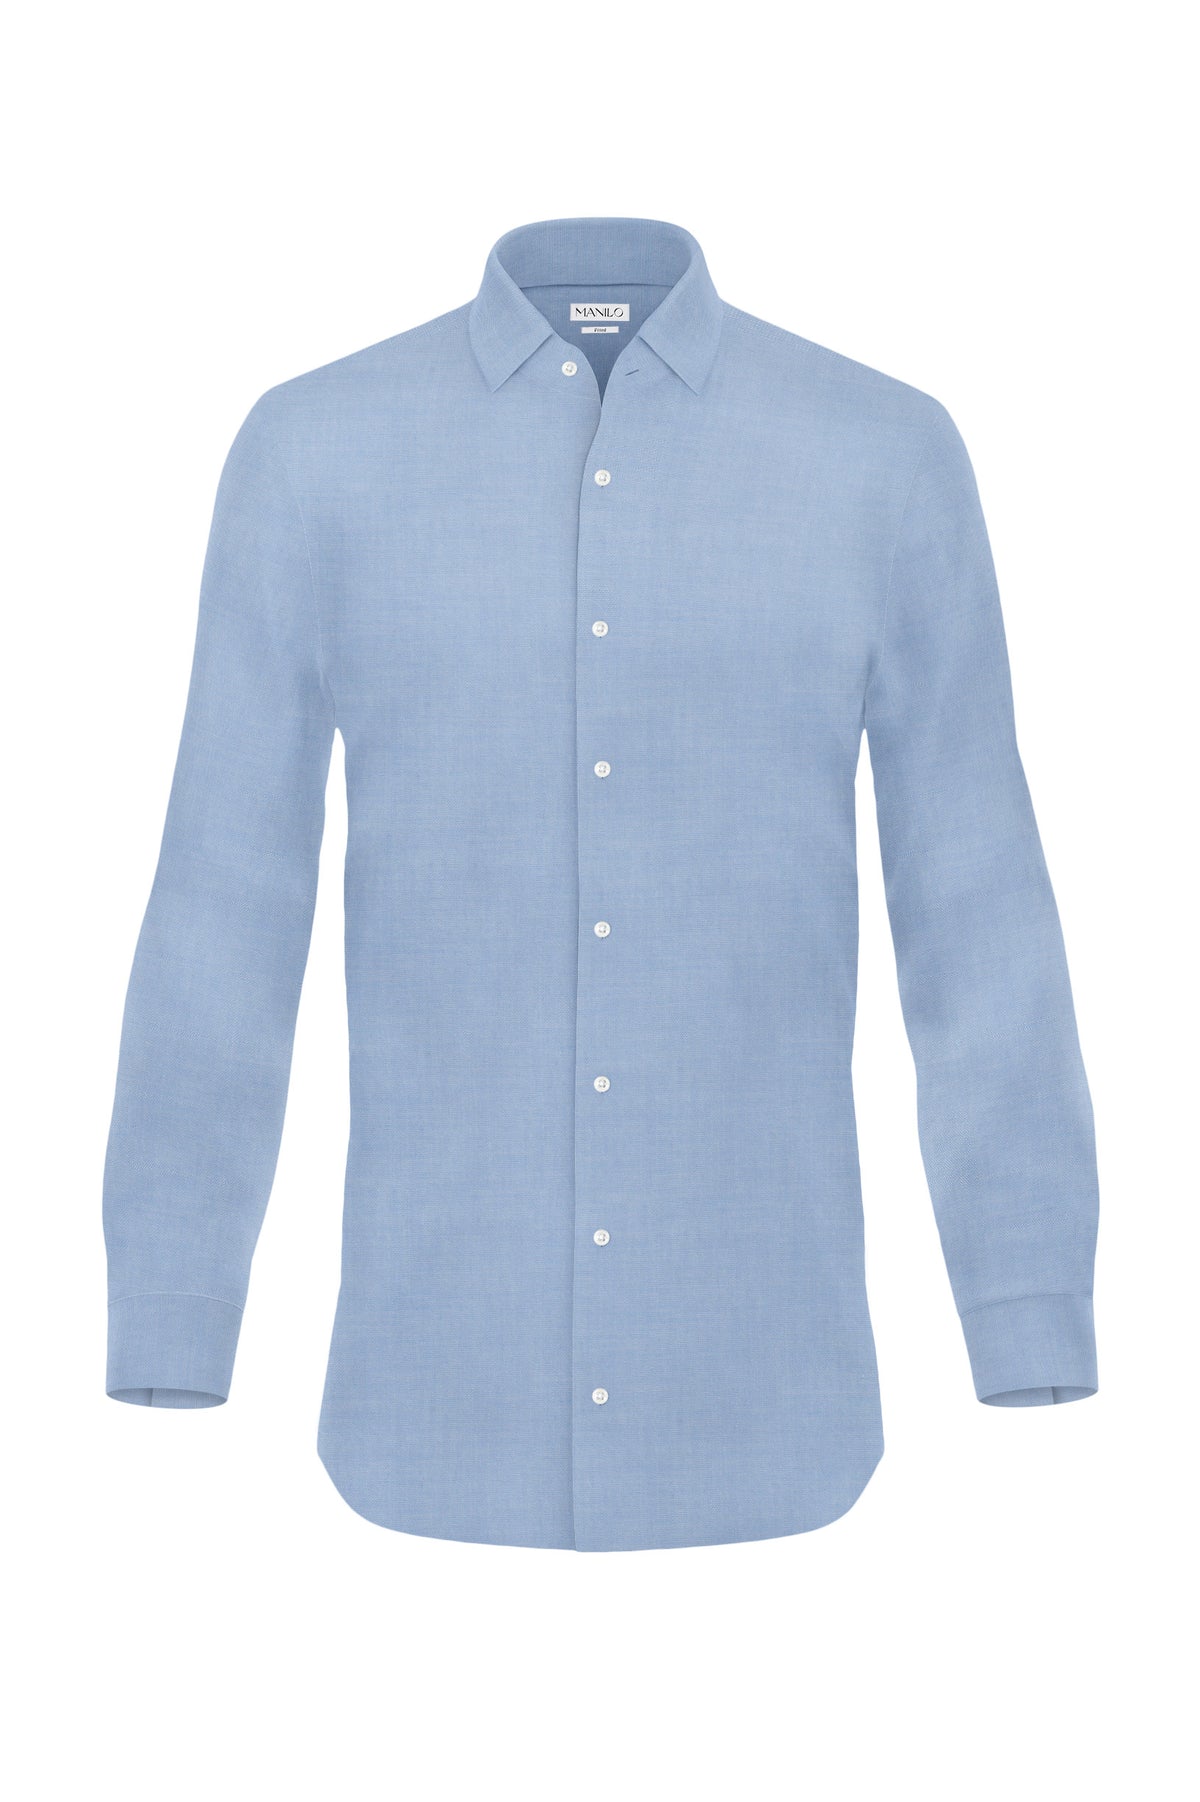 Hochwertiges Twill-Hemd Mittelblau Fitted (schmal geschnitten)